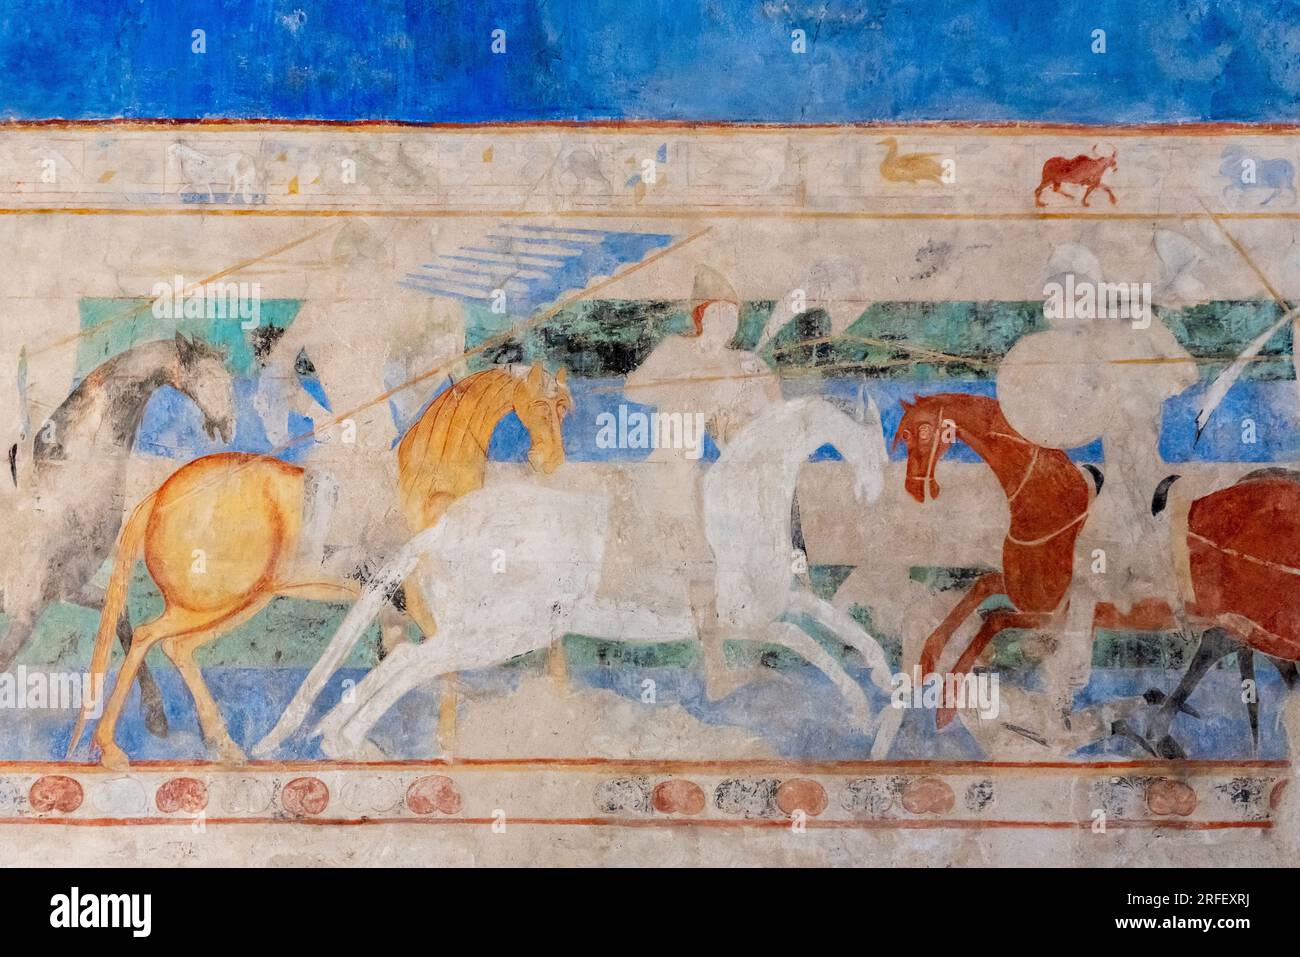 France, Aude, Carcassonne, cité médiévale classée au patrimoine mondial de l'UNESCO, peinture murale de la fin du 12e siècle représentant les batailles entre Francs et Sarrasins Banque D'Images